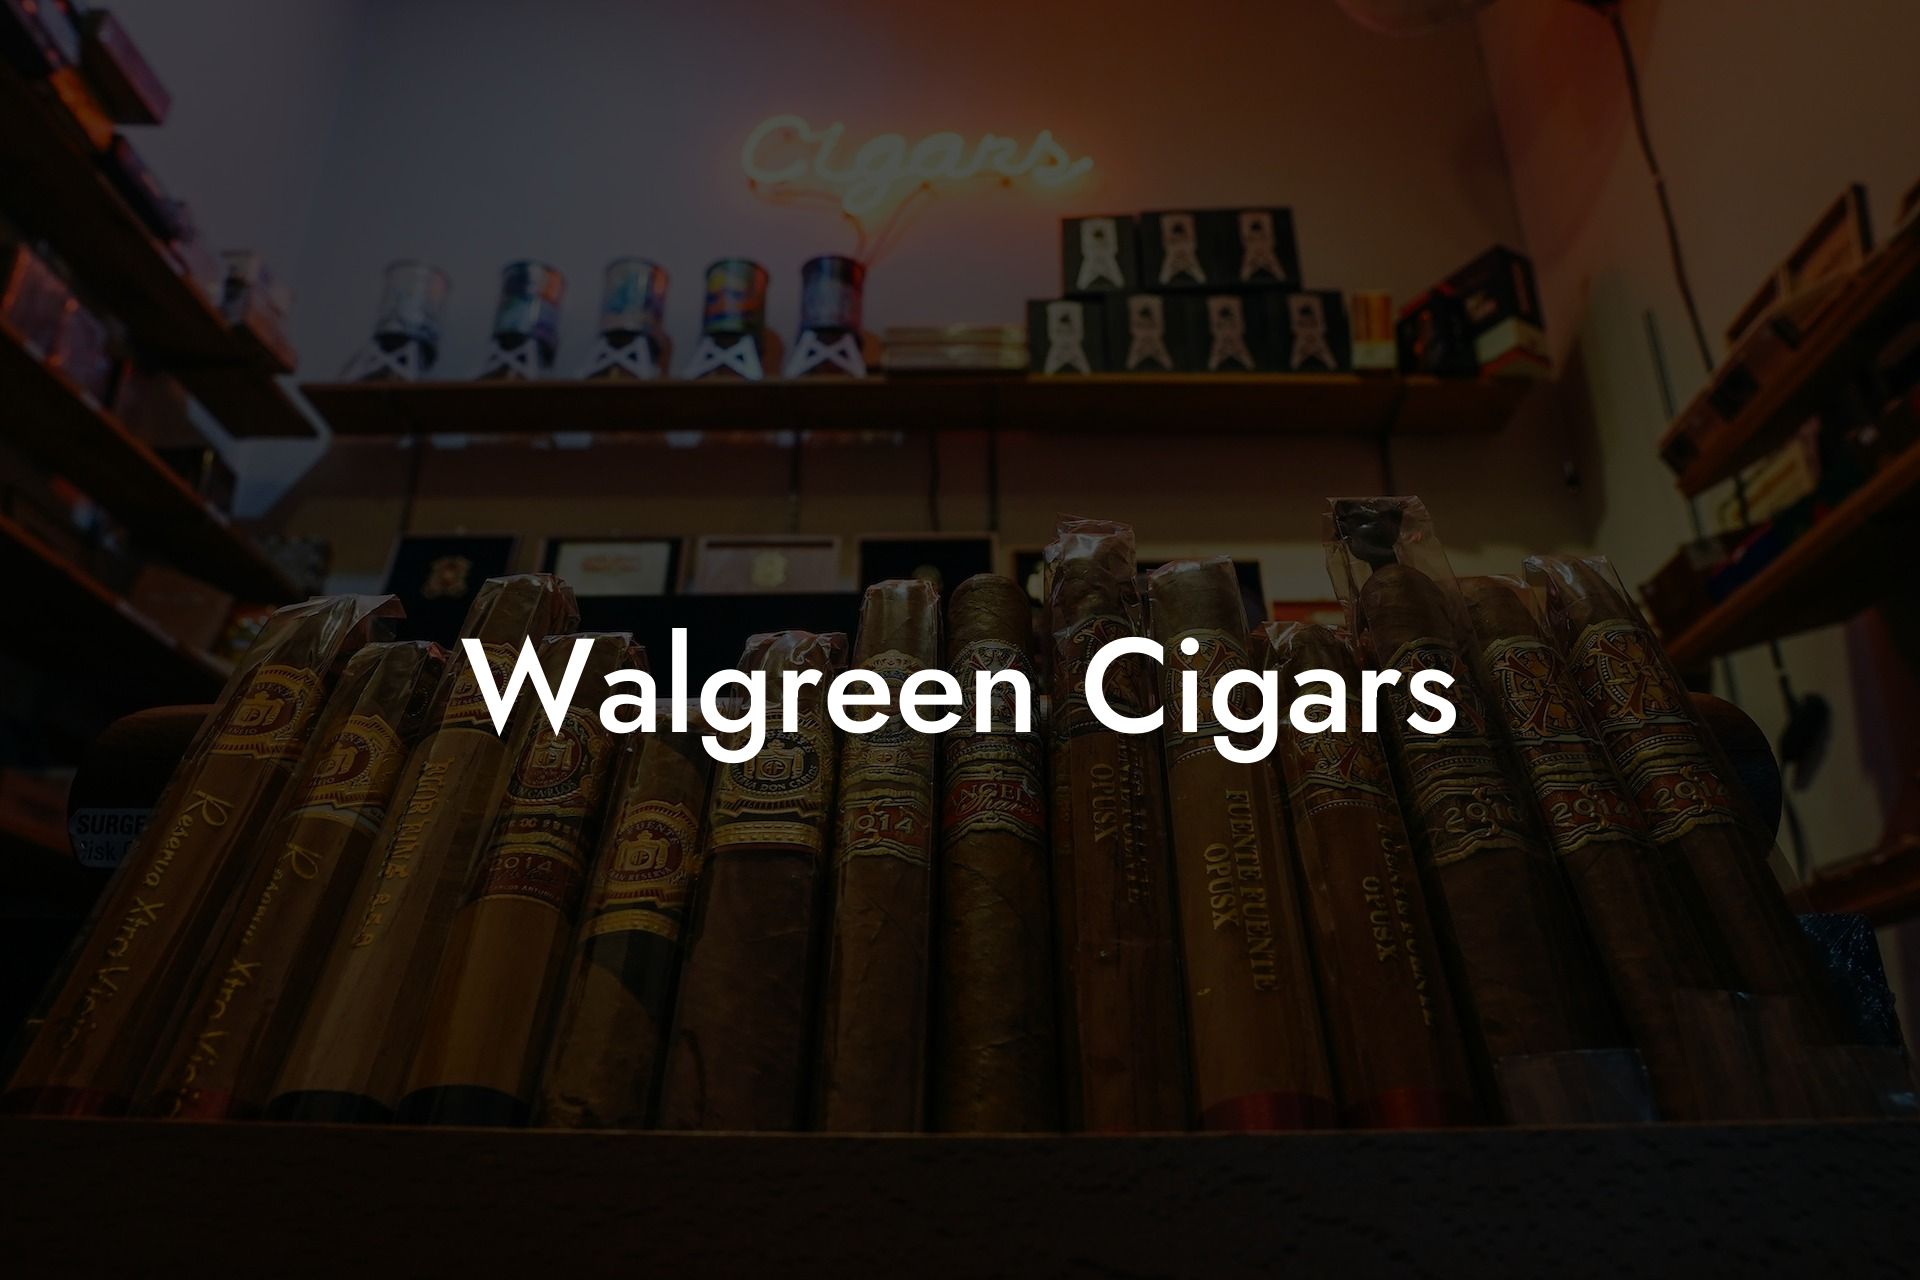 Walgreen Cigars